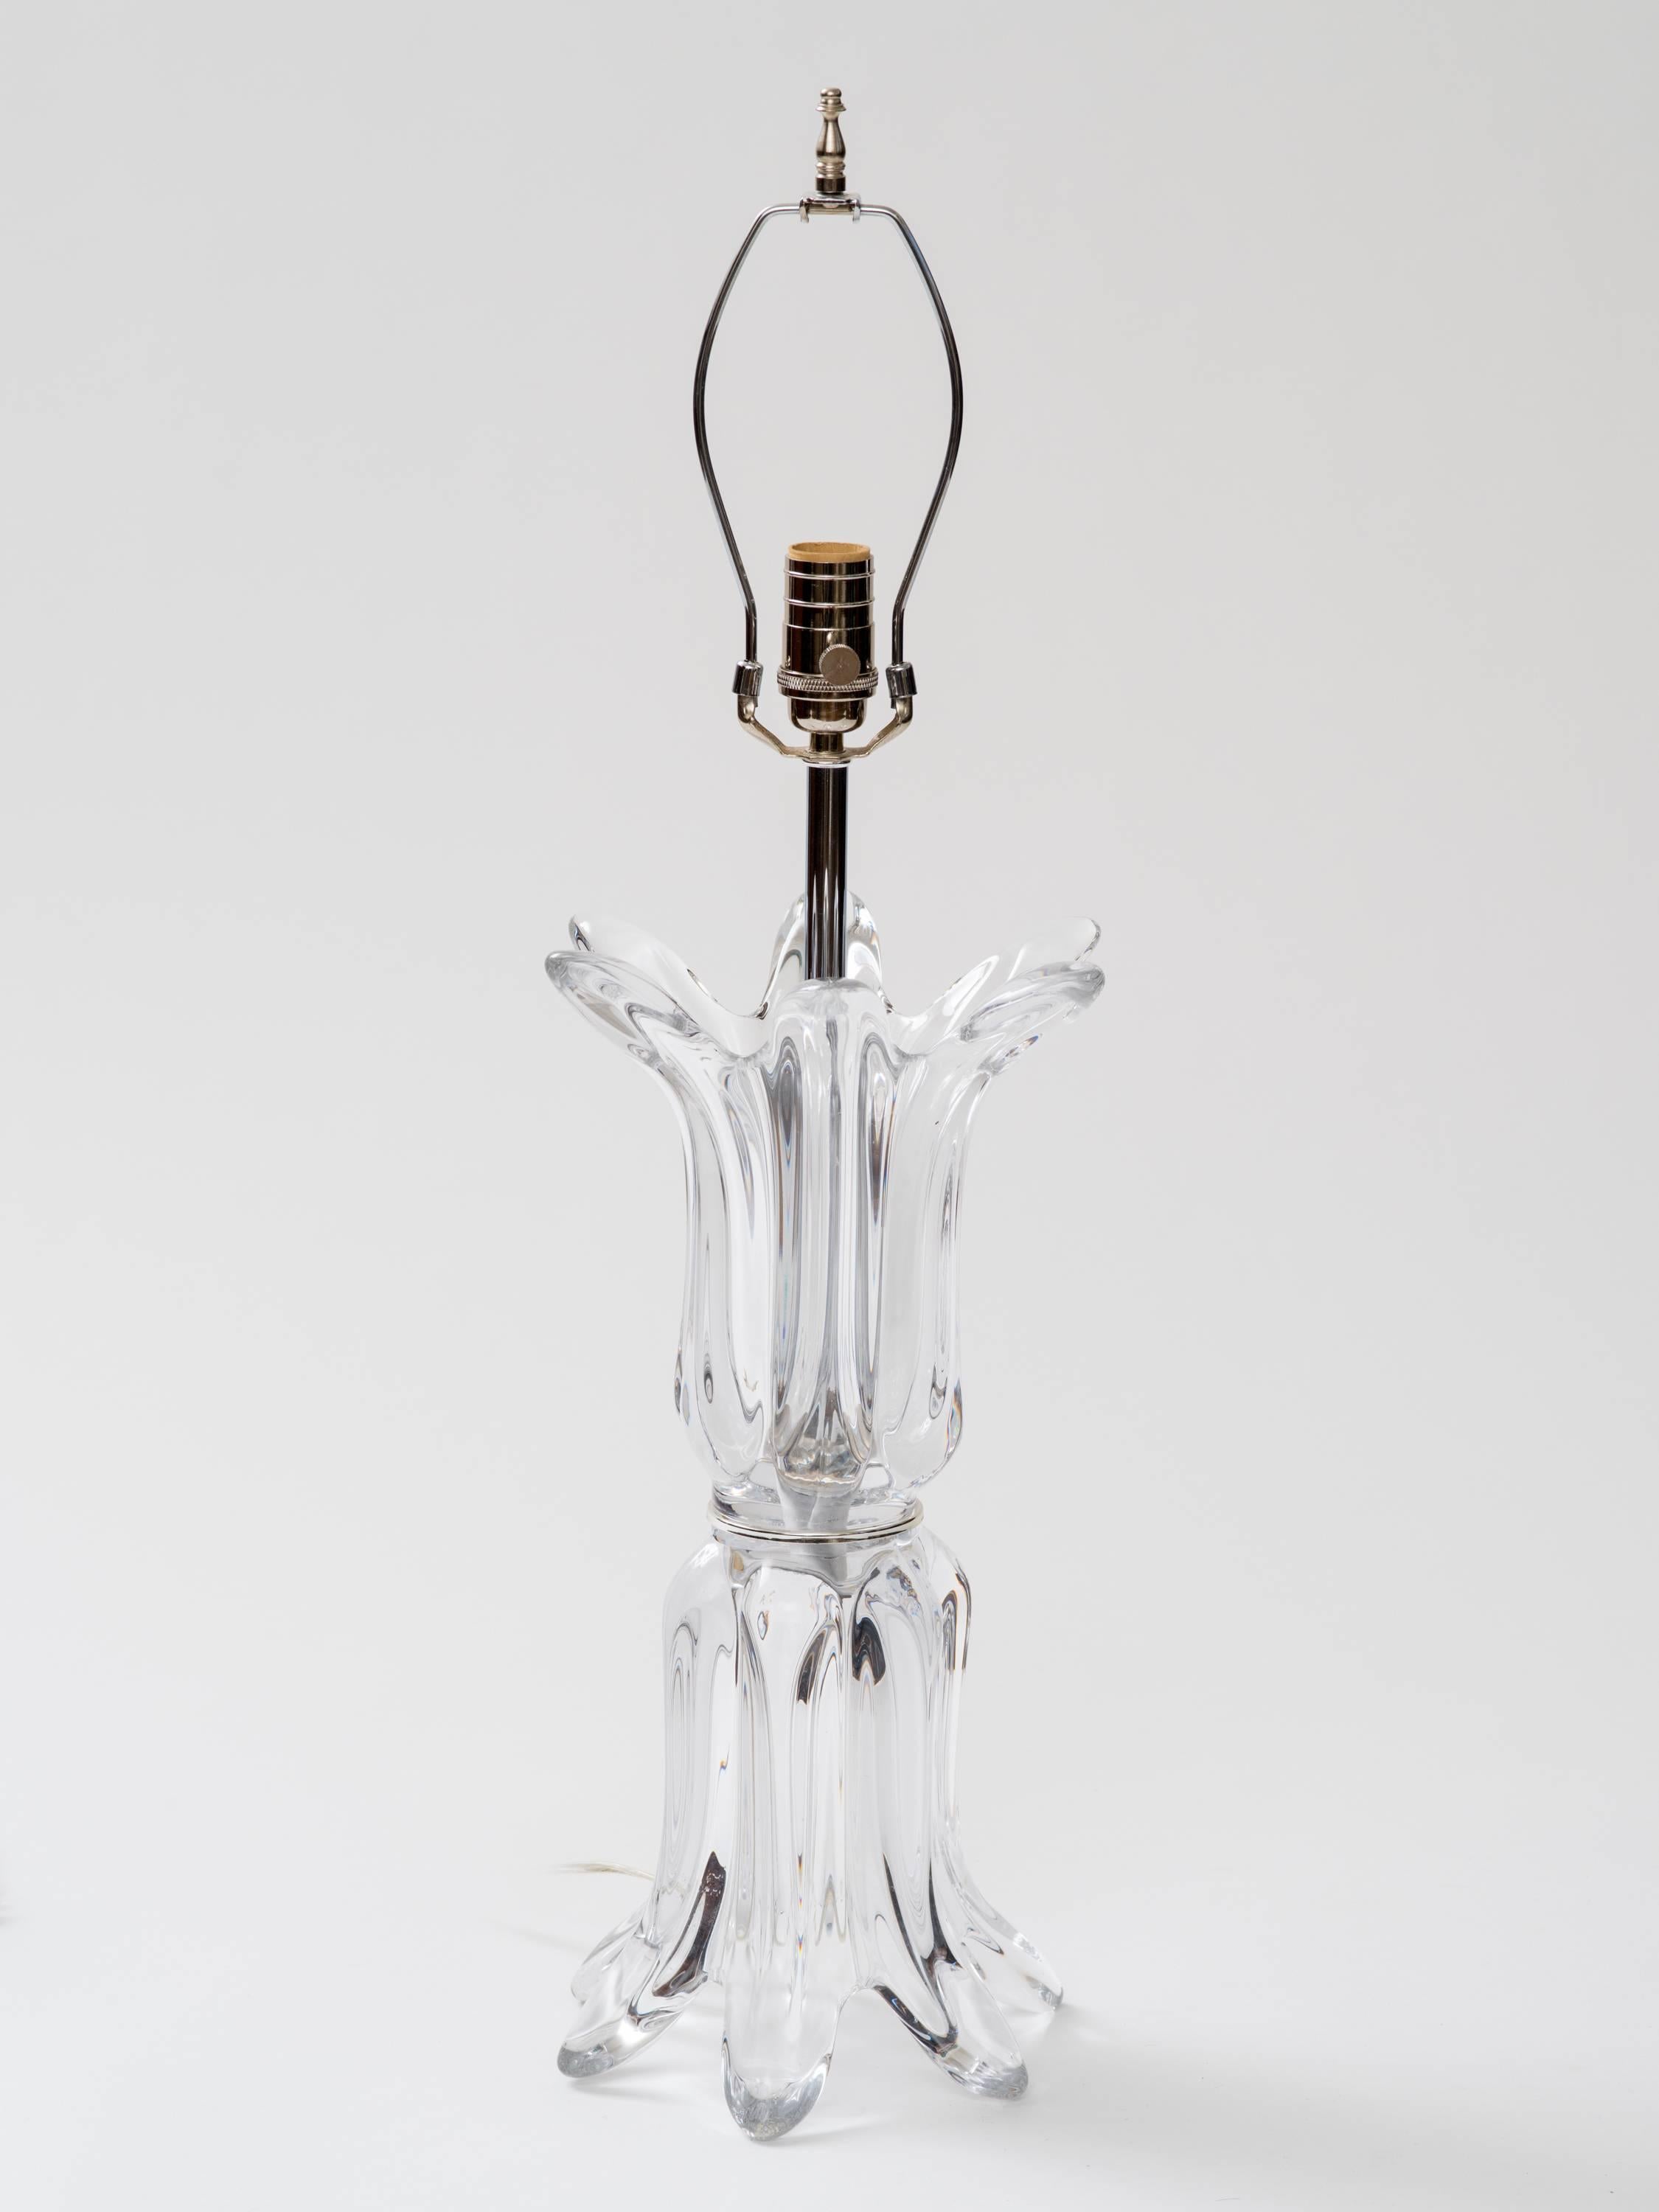 Handgeblasene Lampe aus klarem Murano-Glas mit neu restaurierten, vernickelten Messingbeschlägen, Einzelsockel, maximal 100 Watt. 
Hergestellt in Italien, ca. 1970er Jahre.